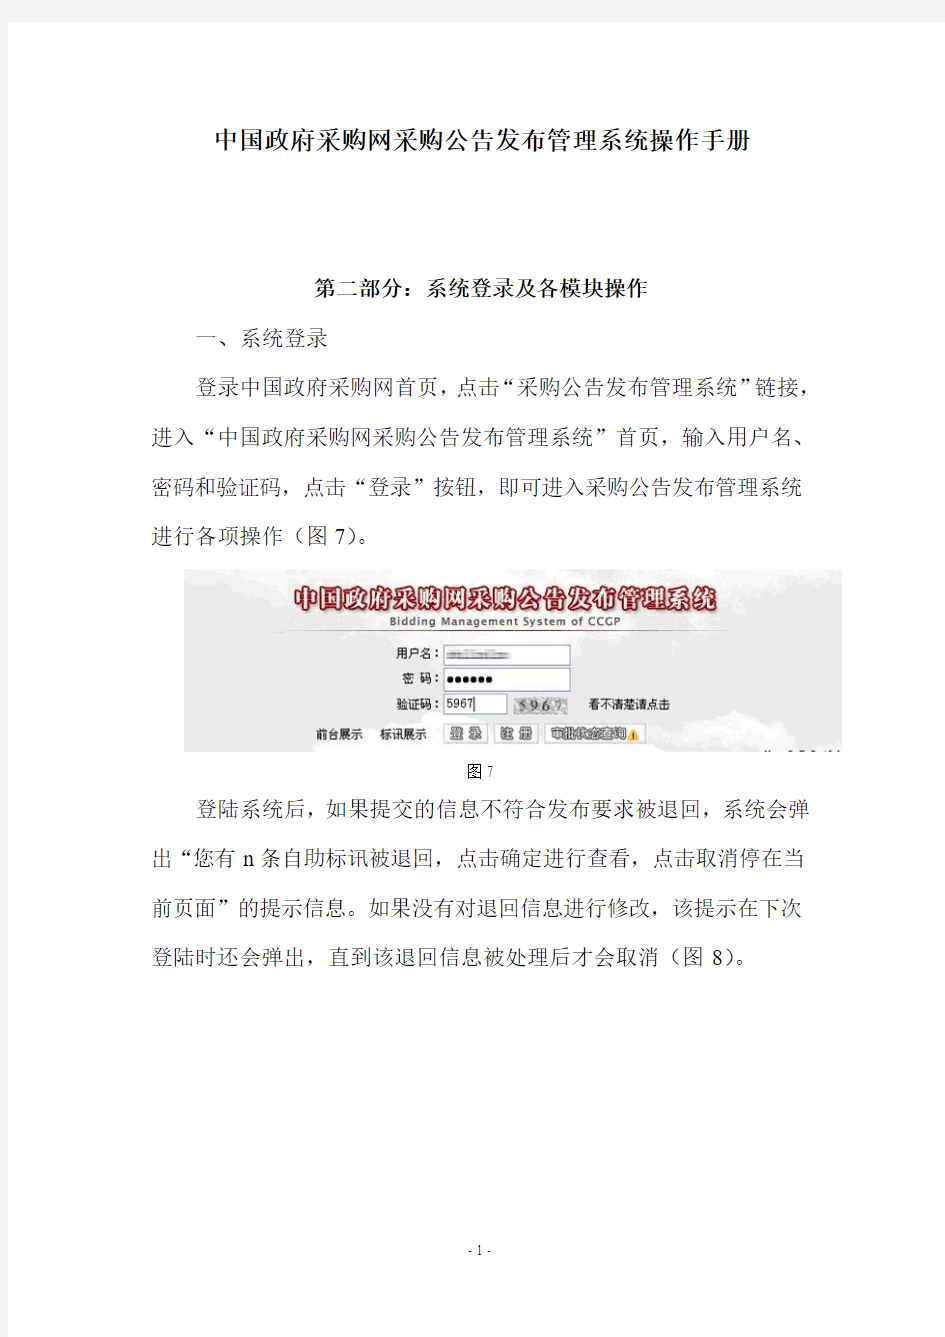 中国政府采购网采购公告发布管理系统操作手册1